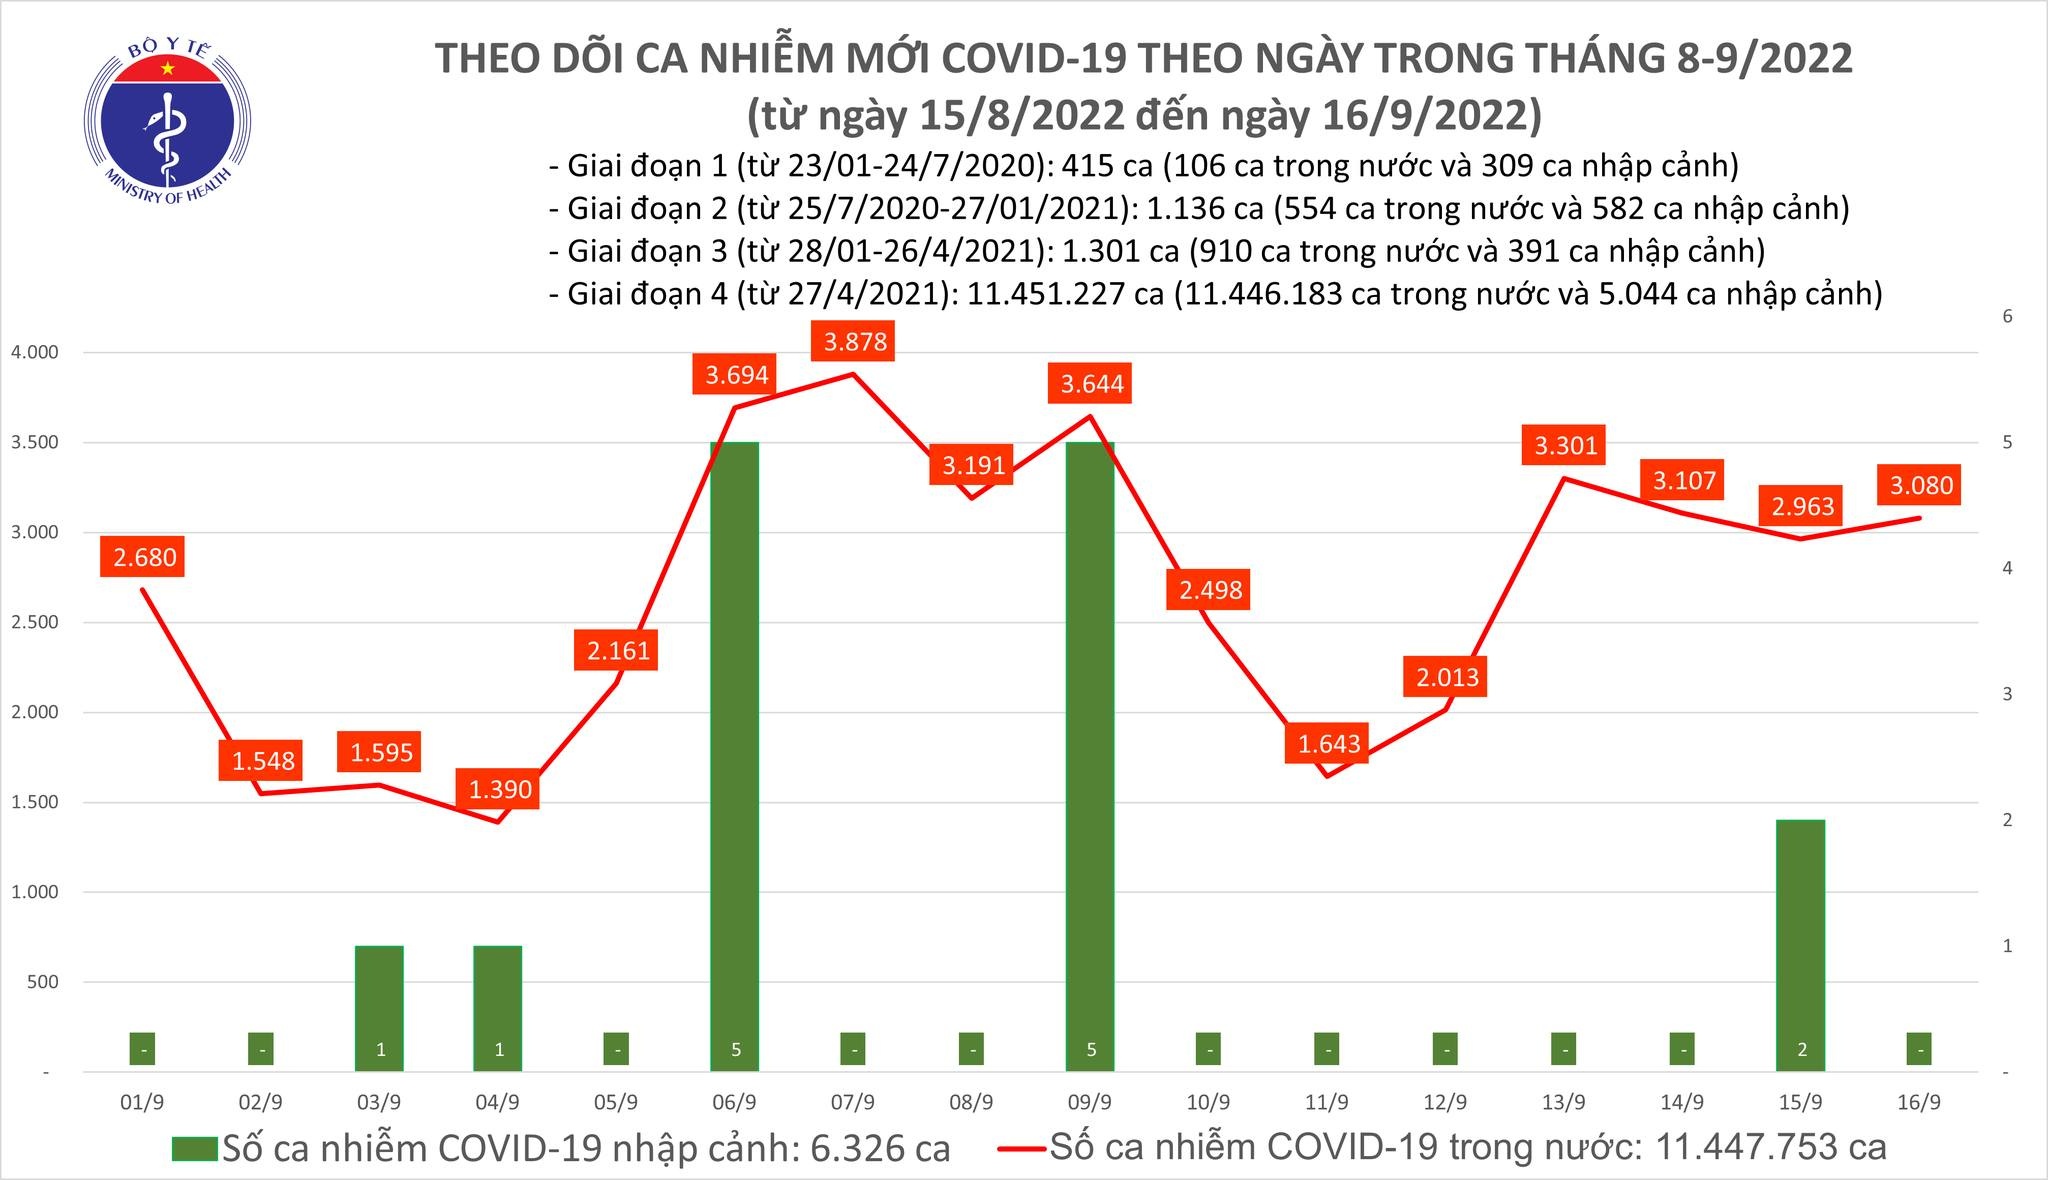 Việt Nam ghi nhận 3.080 ca mắc mới COVID-19 trong ngày 16/9